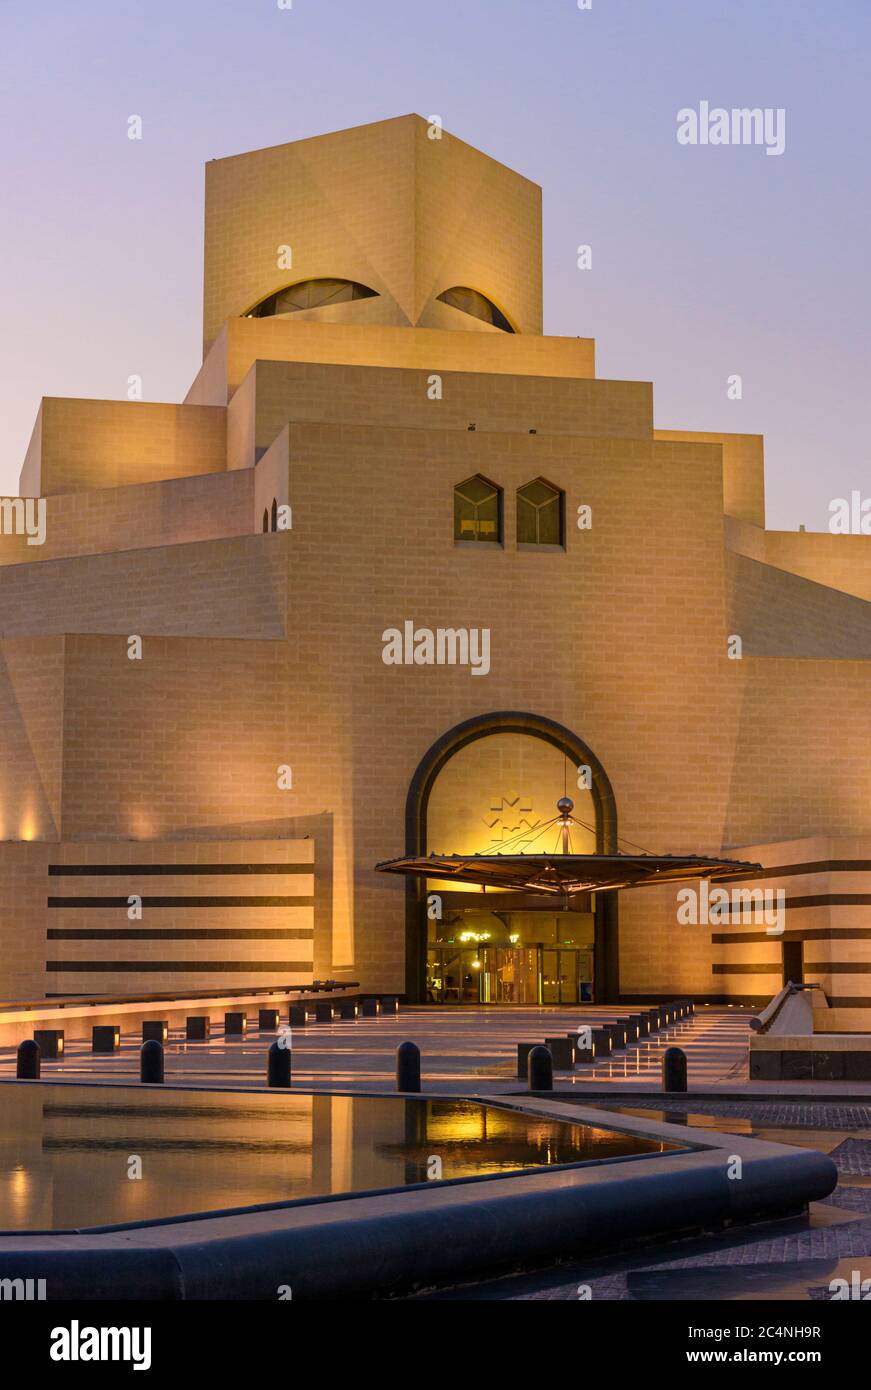 Sunset over the landmark Museum of Islamic Art, Doha, Qatar Stock Photo